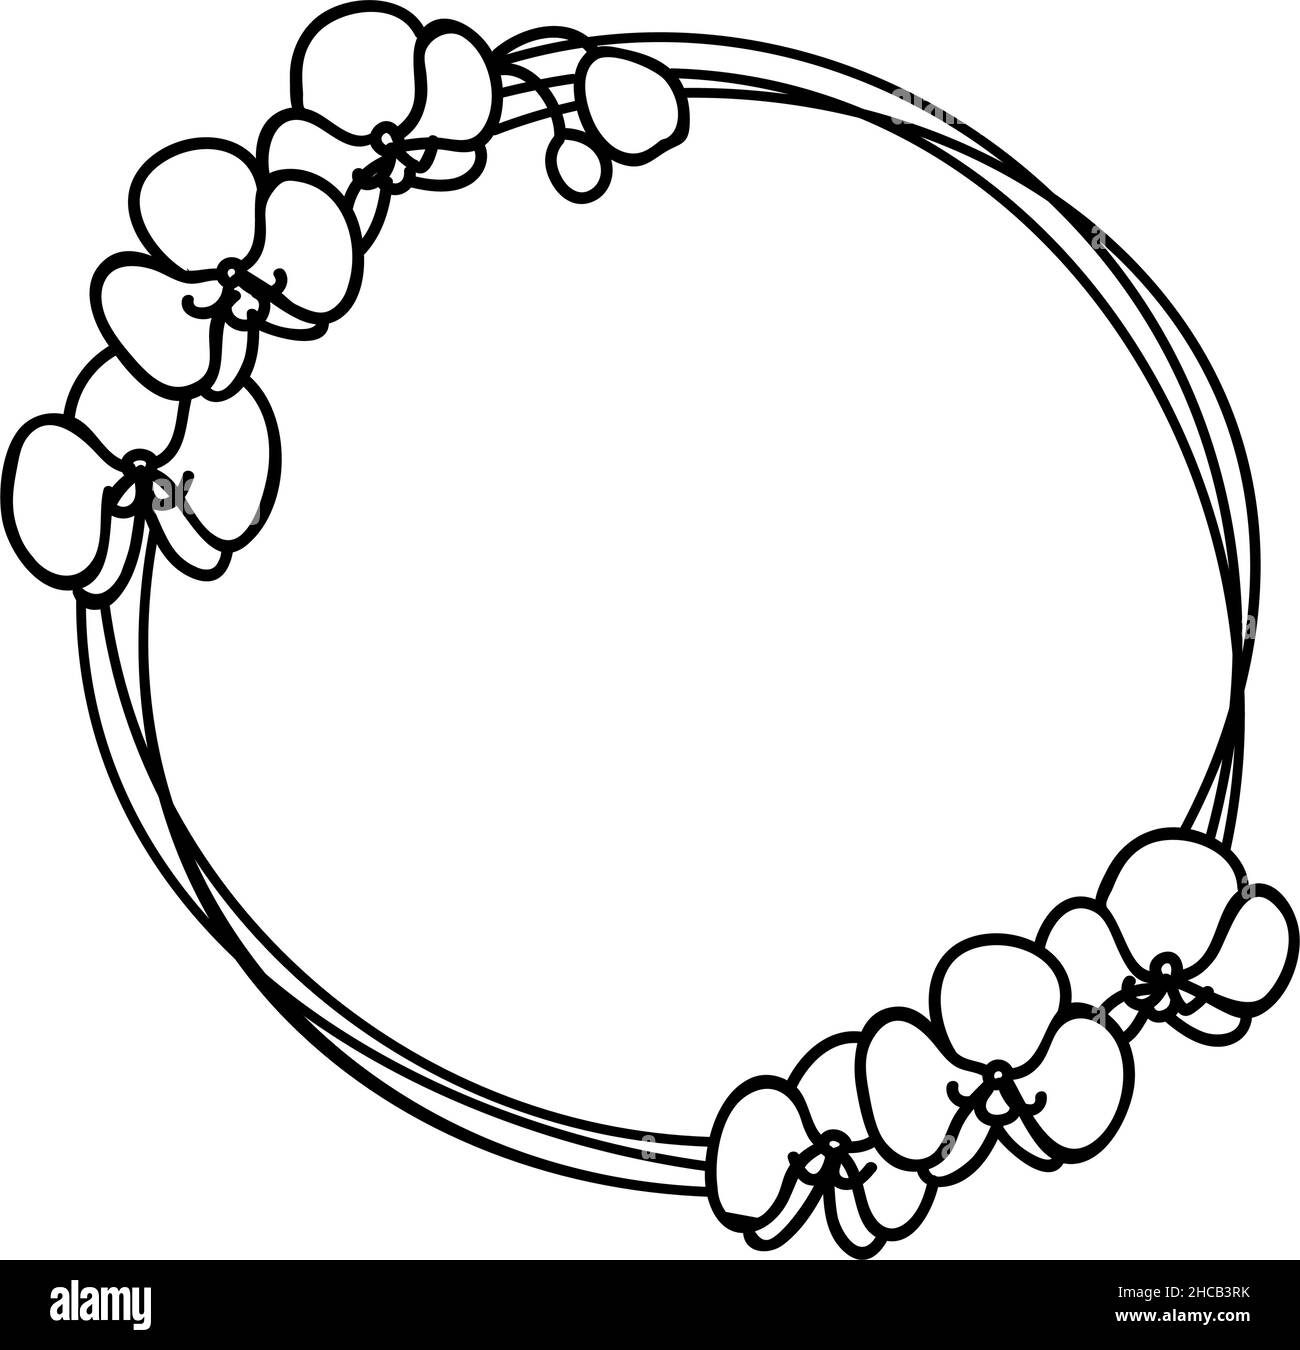 Illustration vectorielle Doodle d'une couronne stylisée avec fleurs d'orchidées.Cadre floral rond pour votre texte Illustration de Vecteur